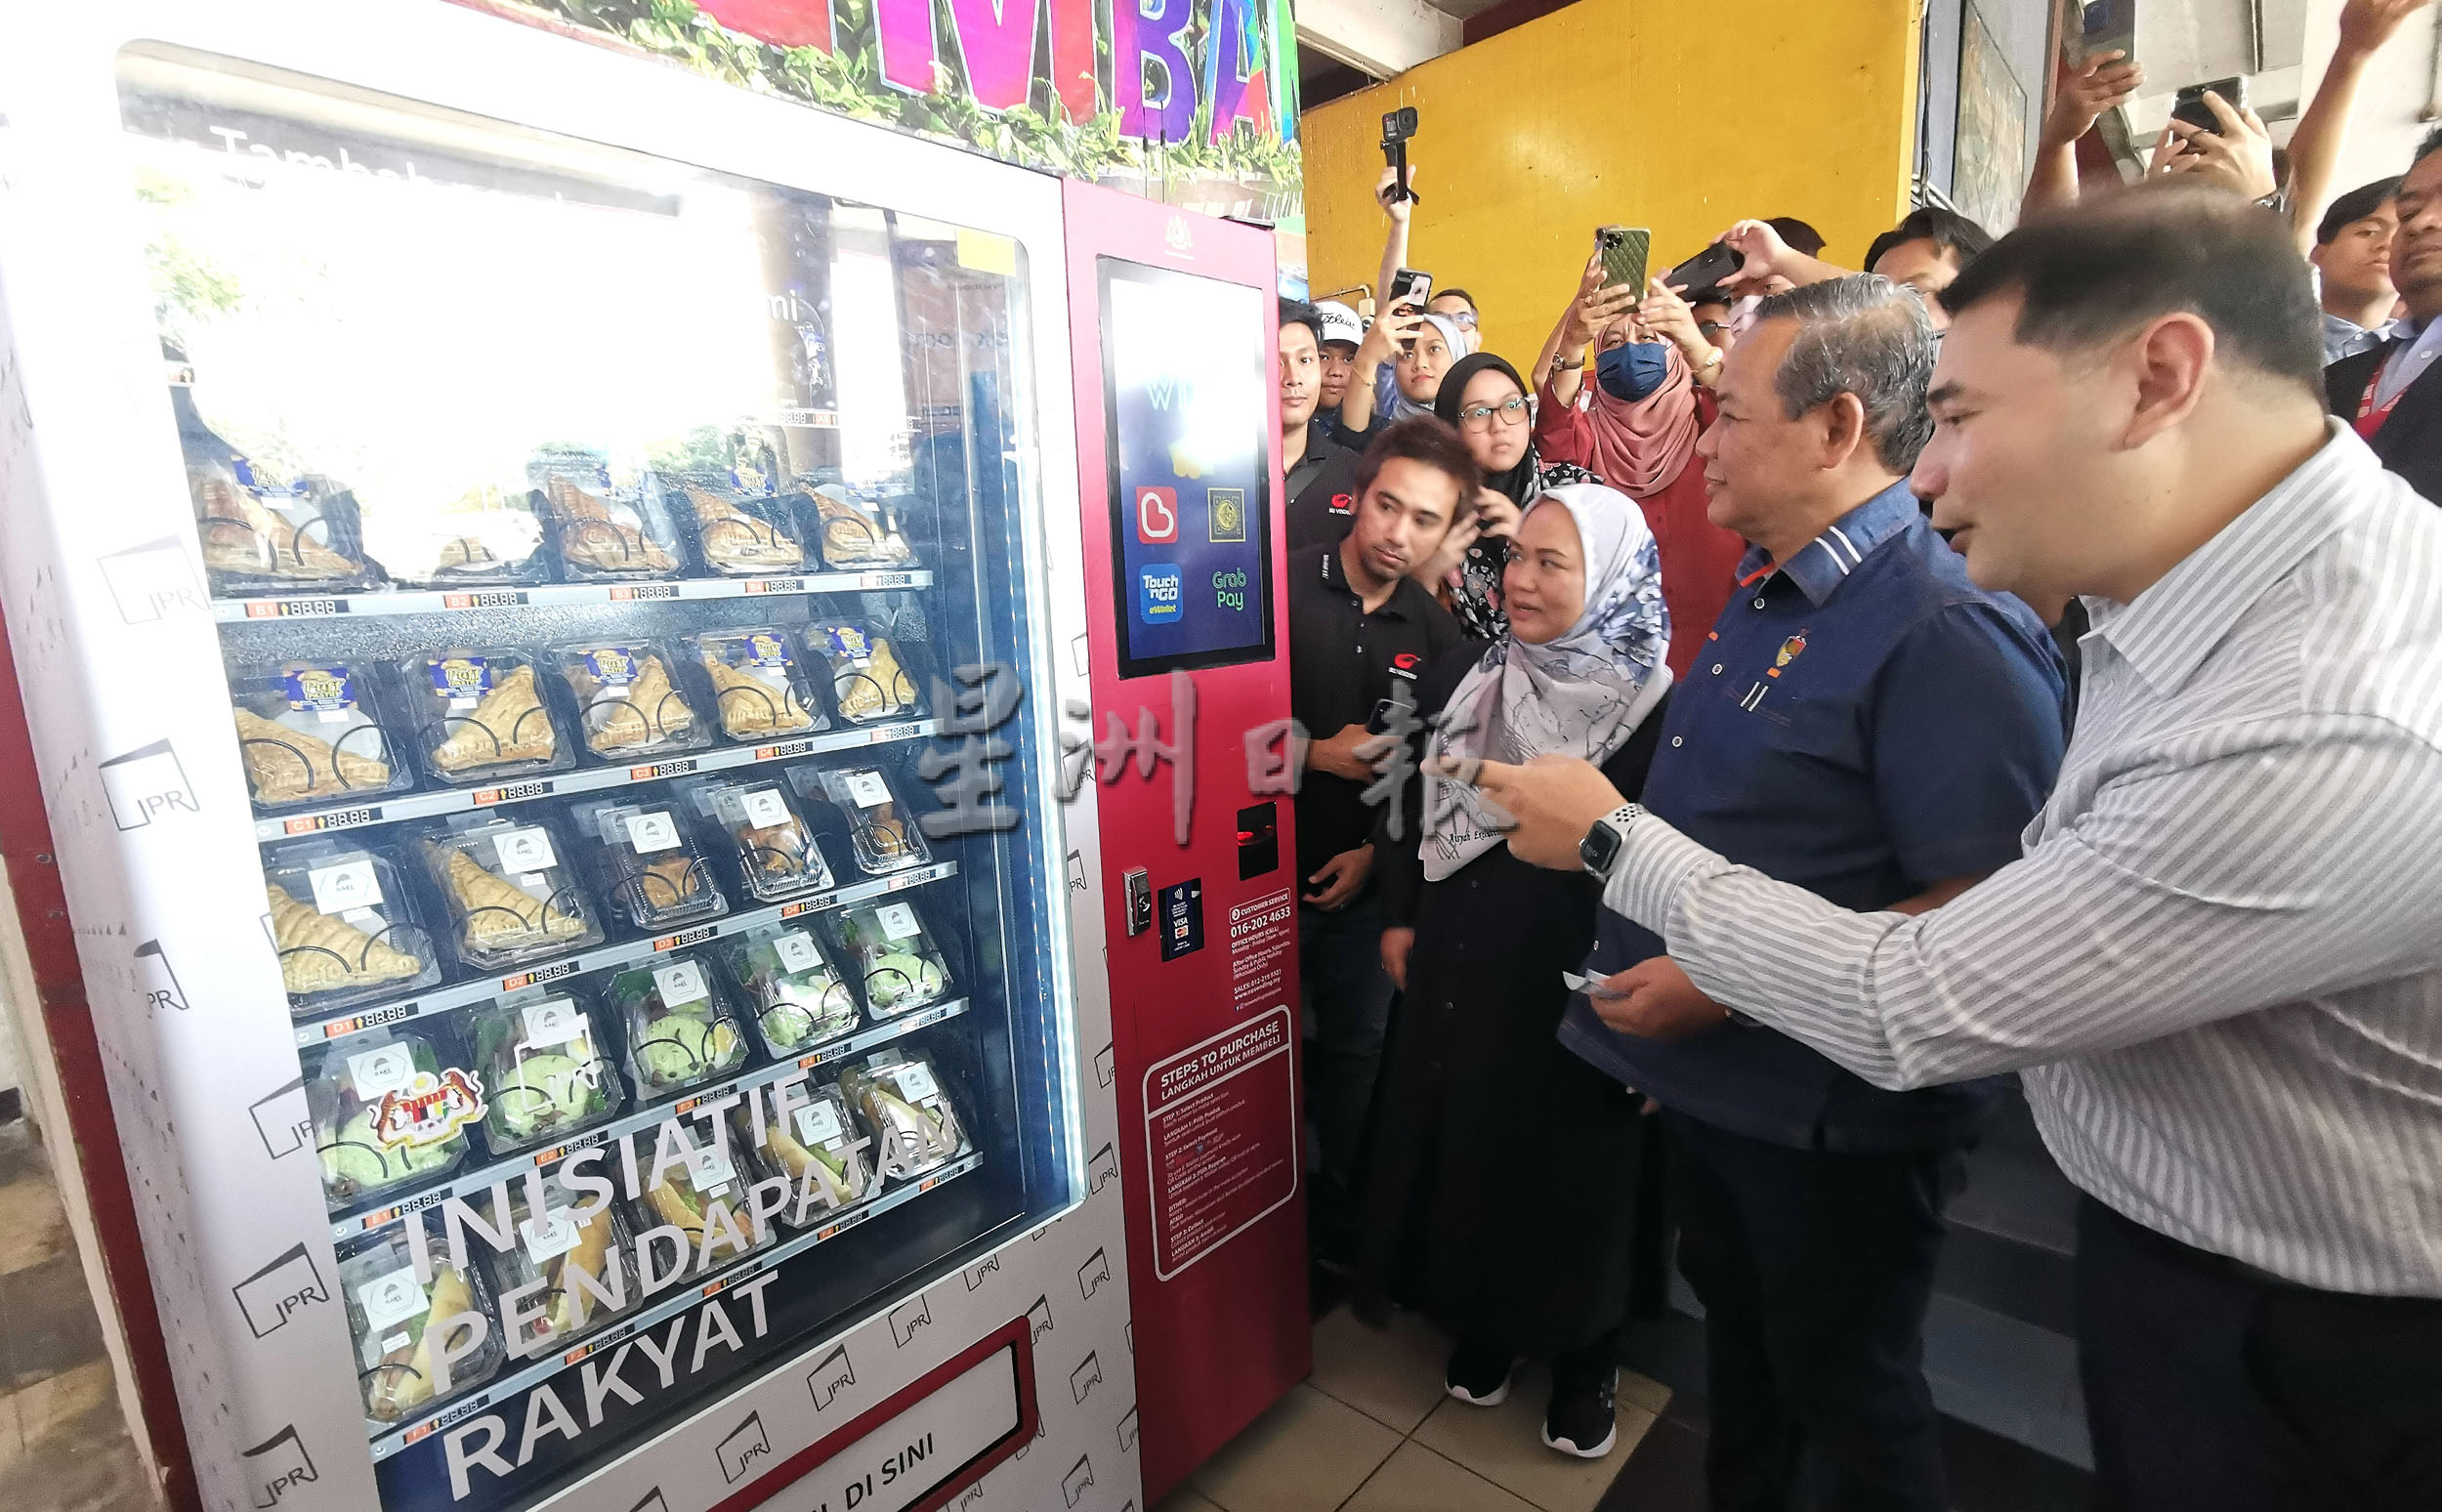 /芙第一巴士终站设首个“人民收入倡议”自动贩卖机，食物最低售价2令吉